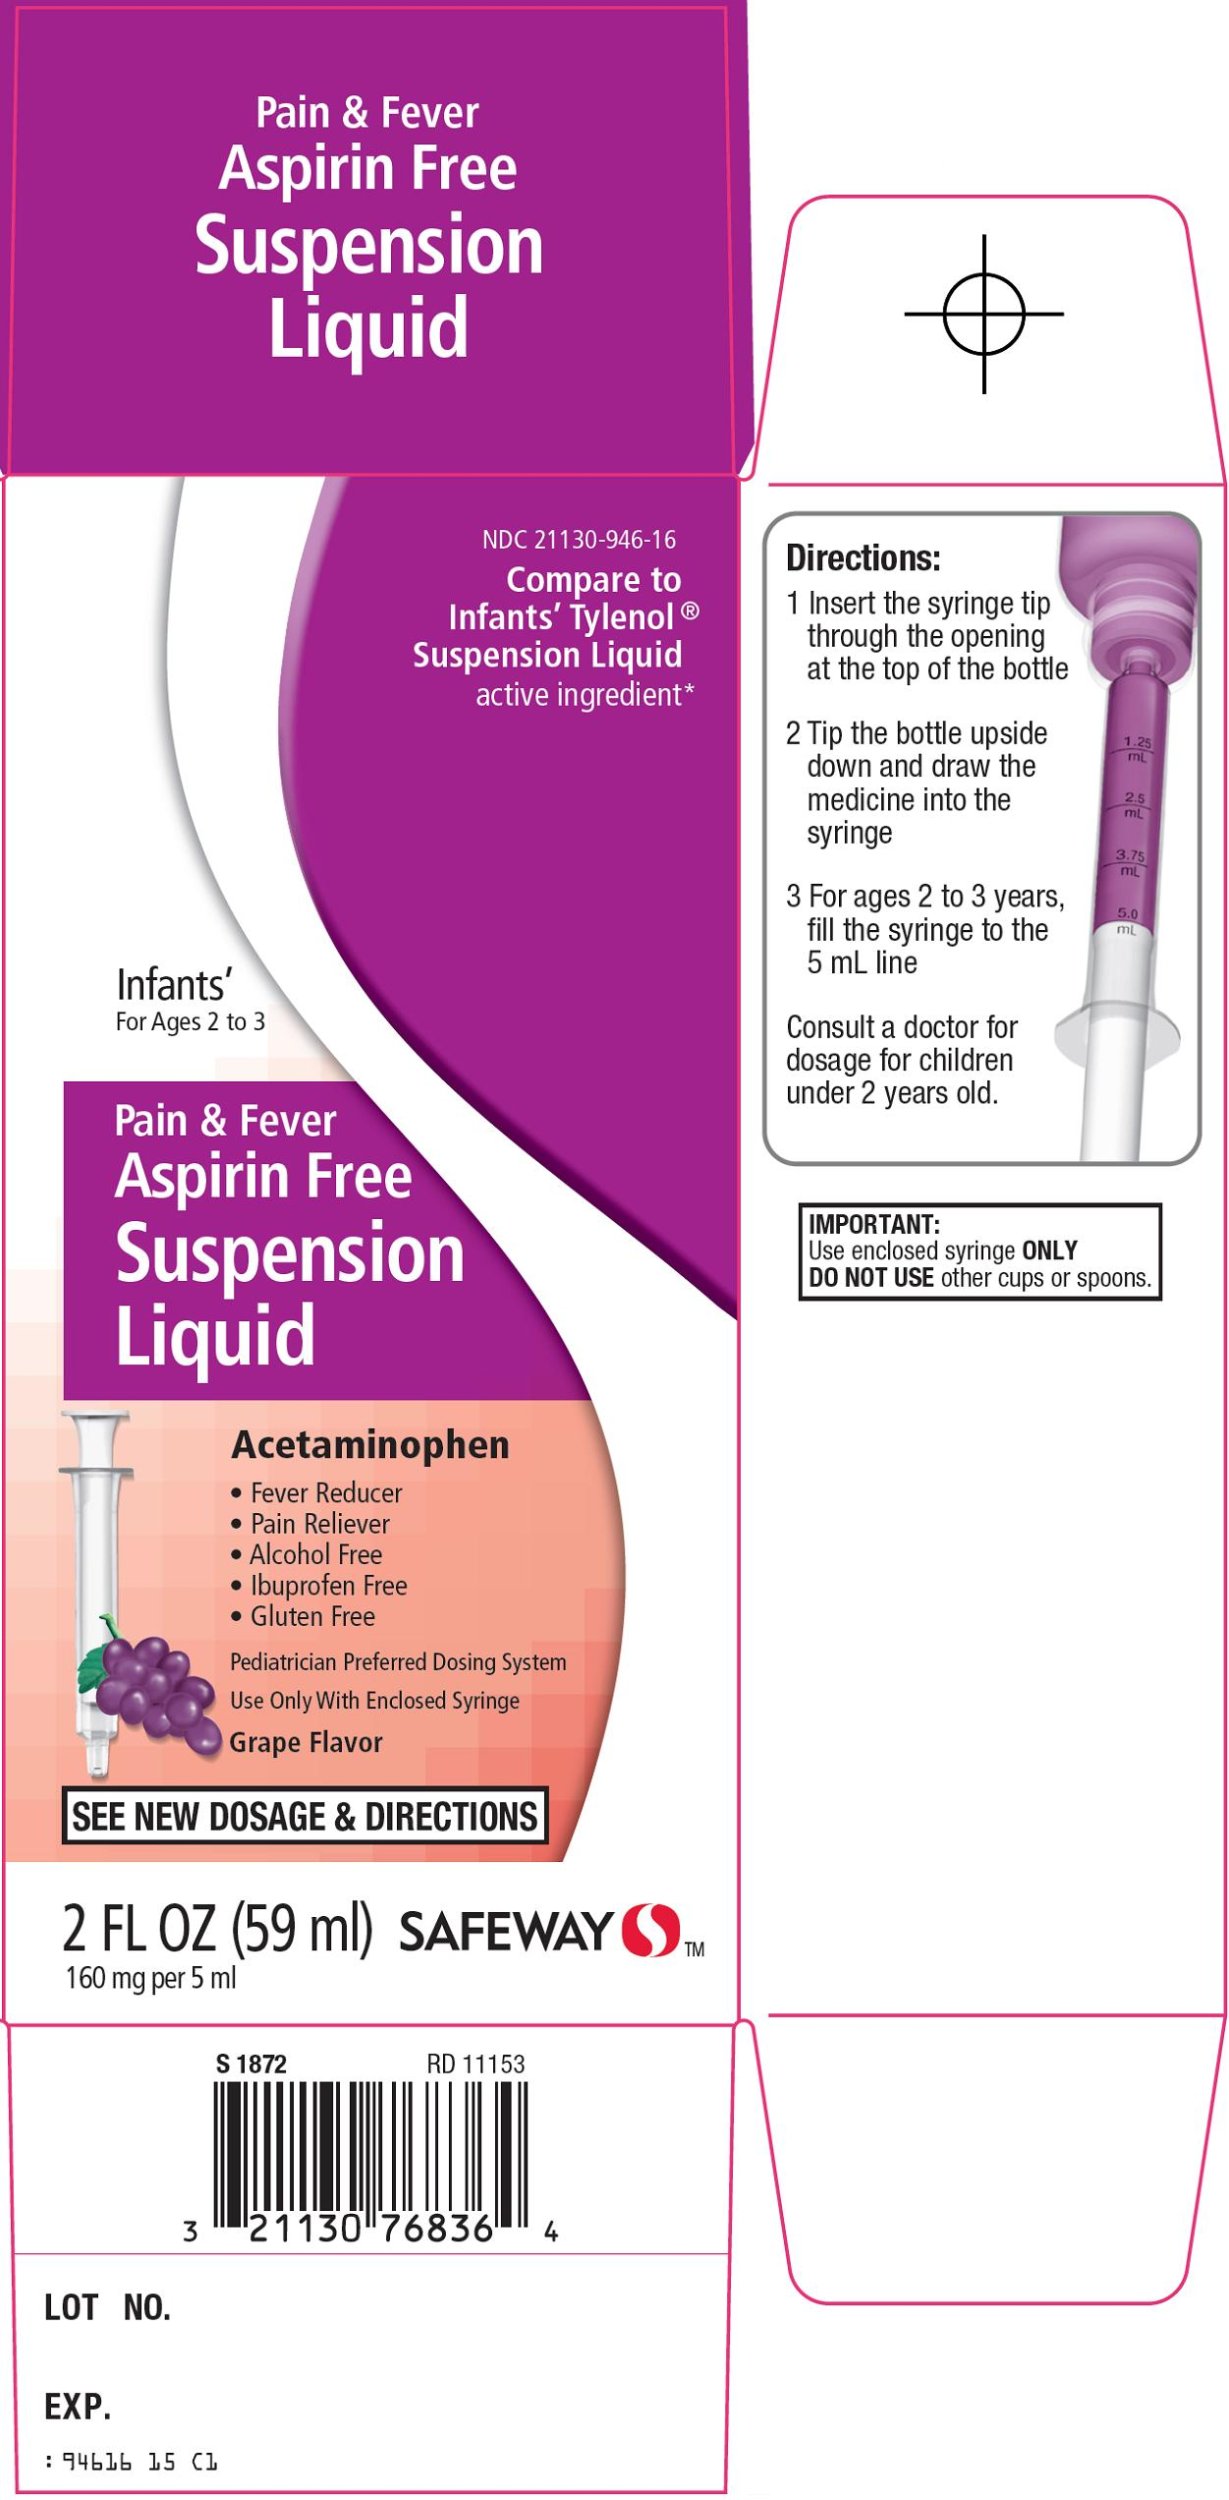 Aspirin Free Suspension Liquid Carton Image 1